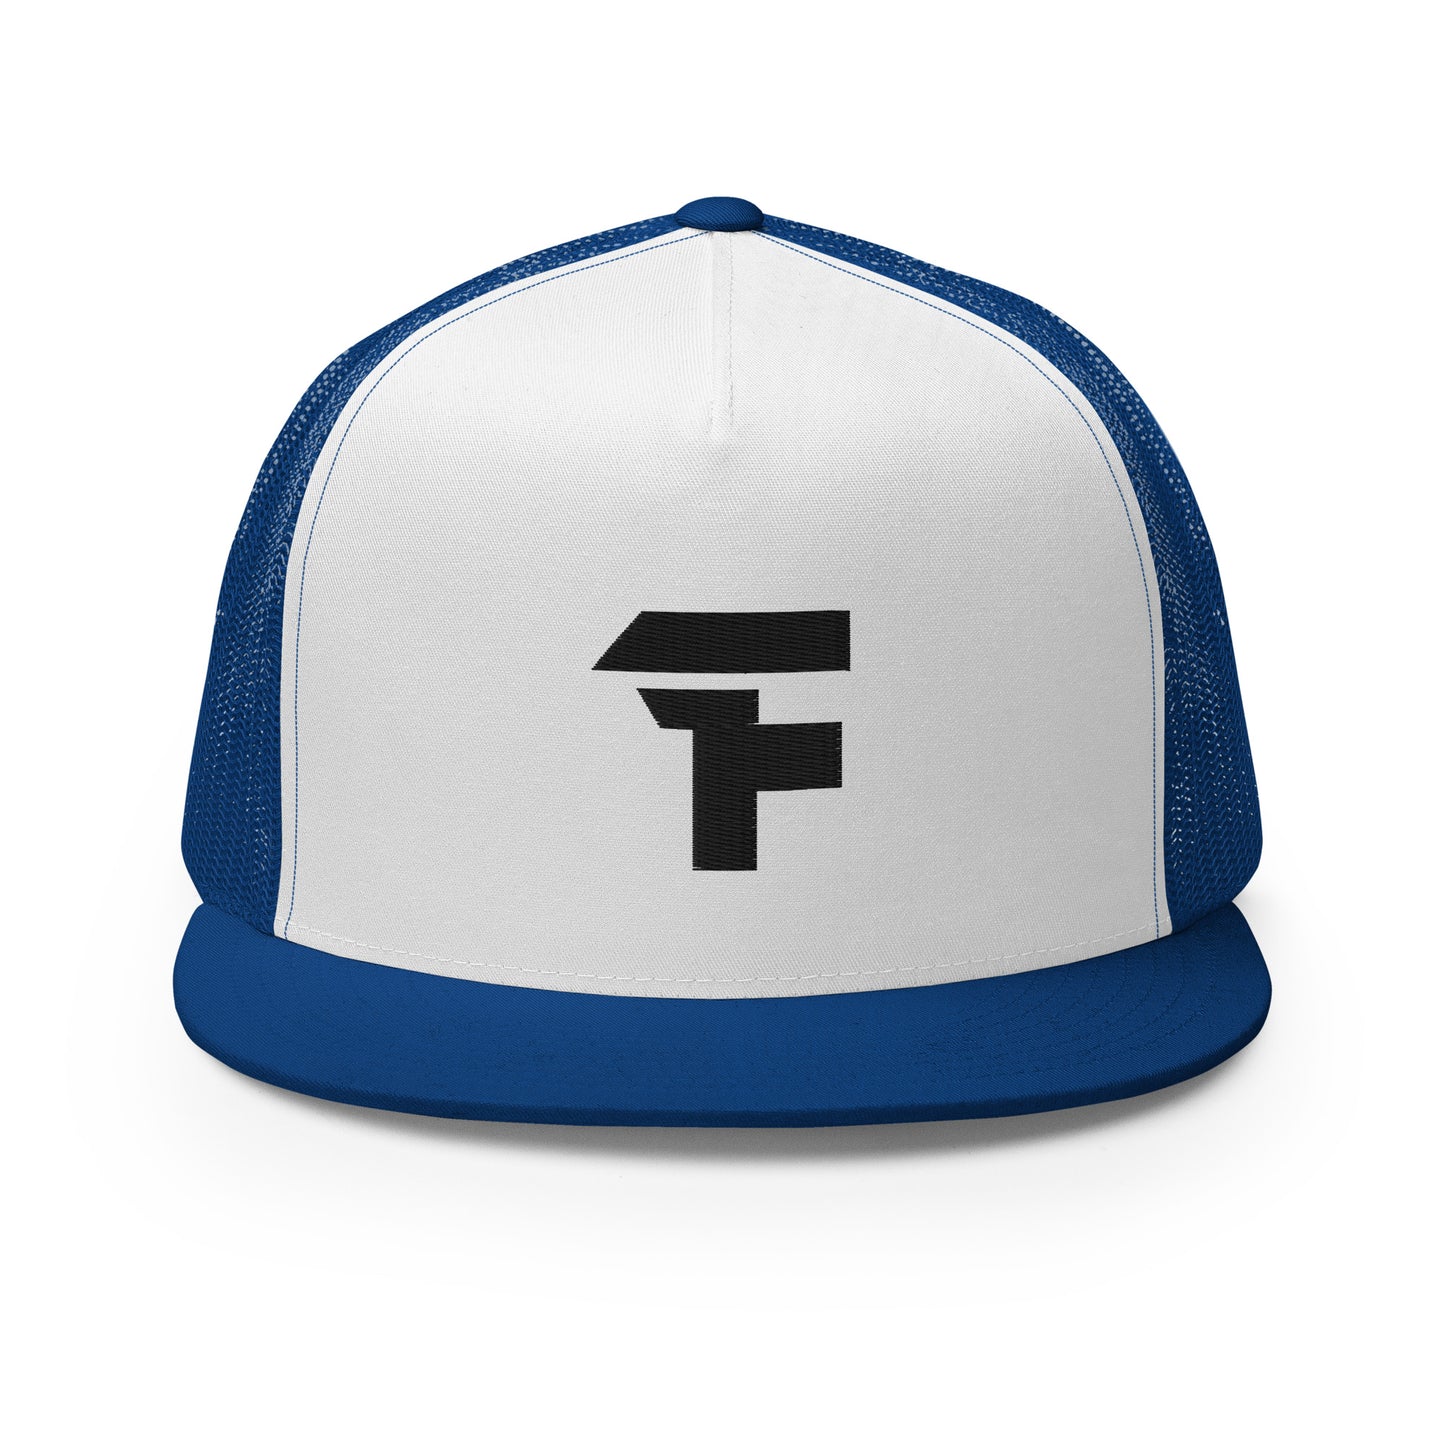 Francis Thorne "FT" Trucker Cap